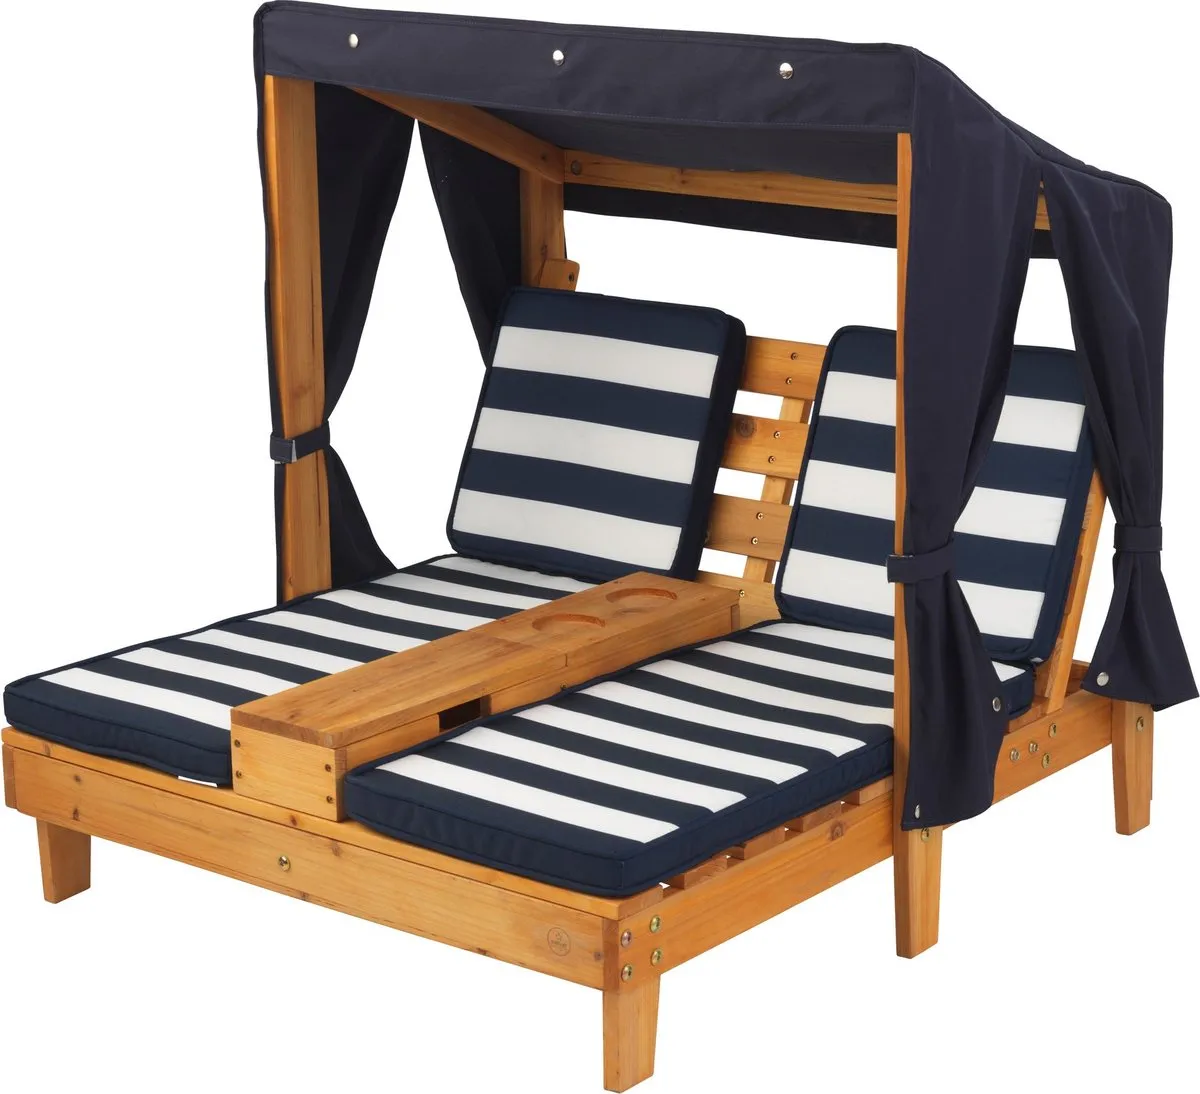 KidKraft Tweepersoons chaise longue met bekerhouders - Honingkleur met blauwe en witte strepen speelgoed